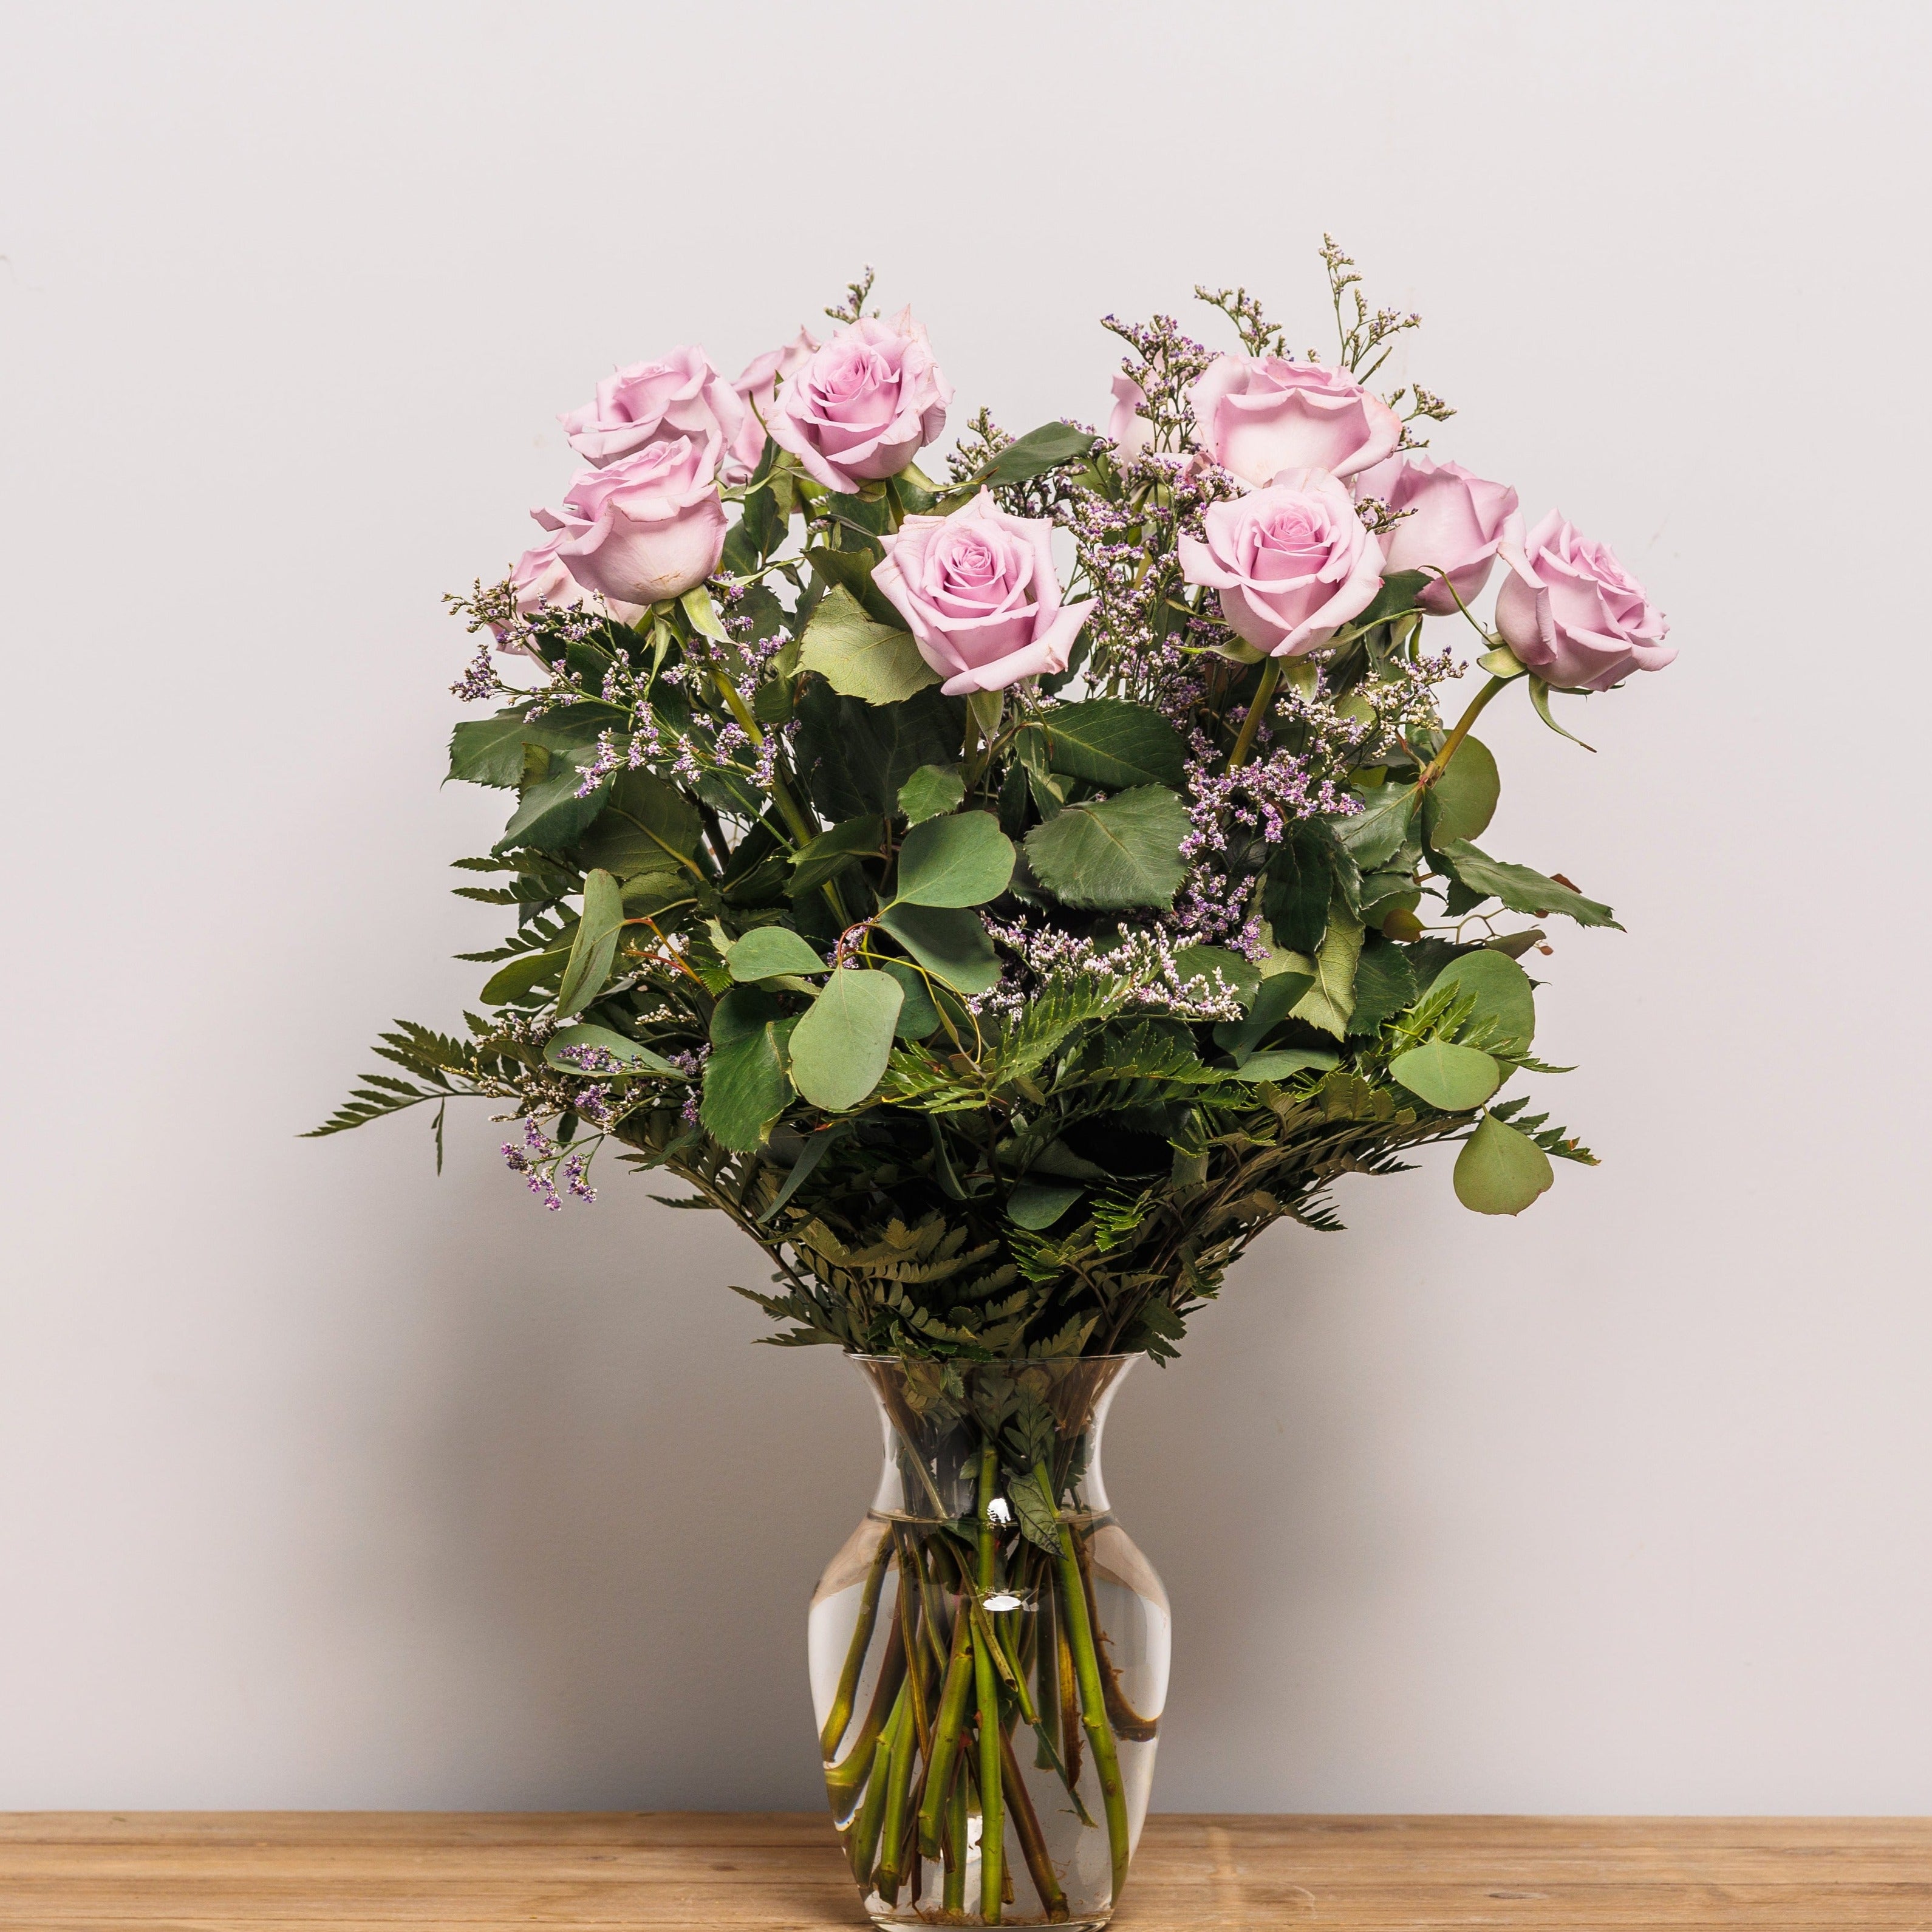 A dozen lavender roses arranged in a vase.